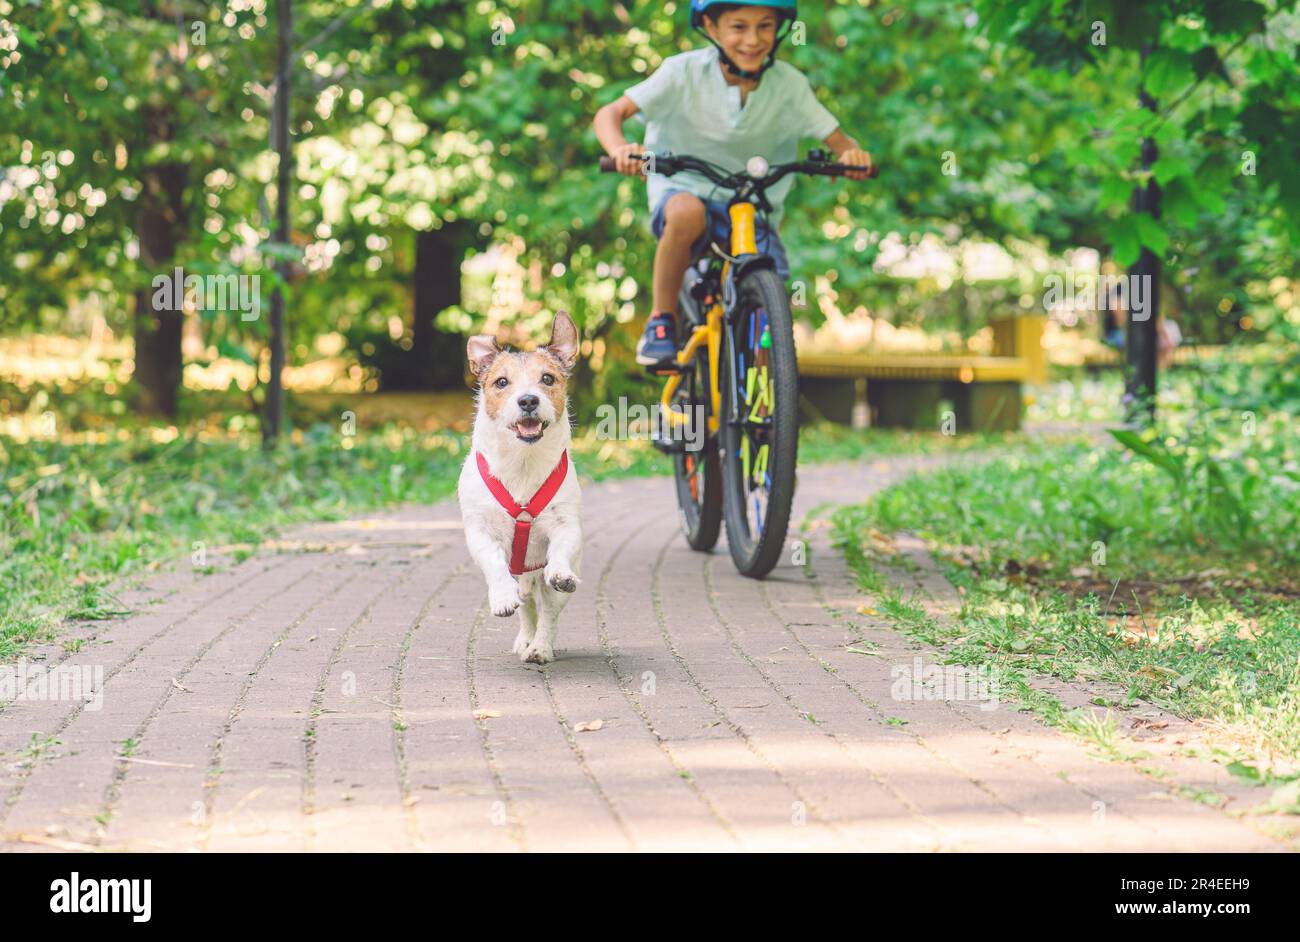 Un joyeux garçon en vélo pourchasse son chien de compagnie qui court sur le sentier du parc le jour de l'été Banque D'Images